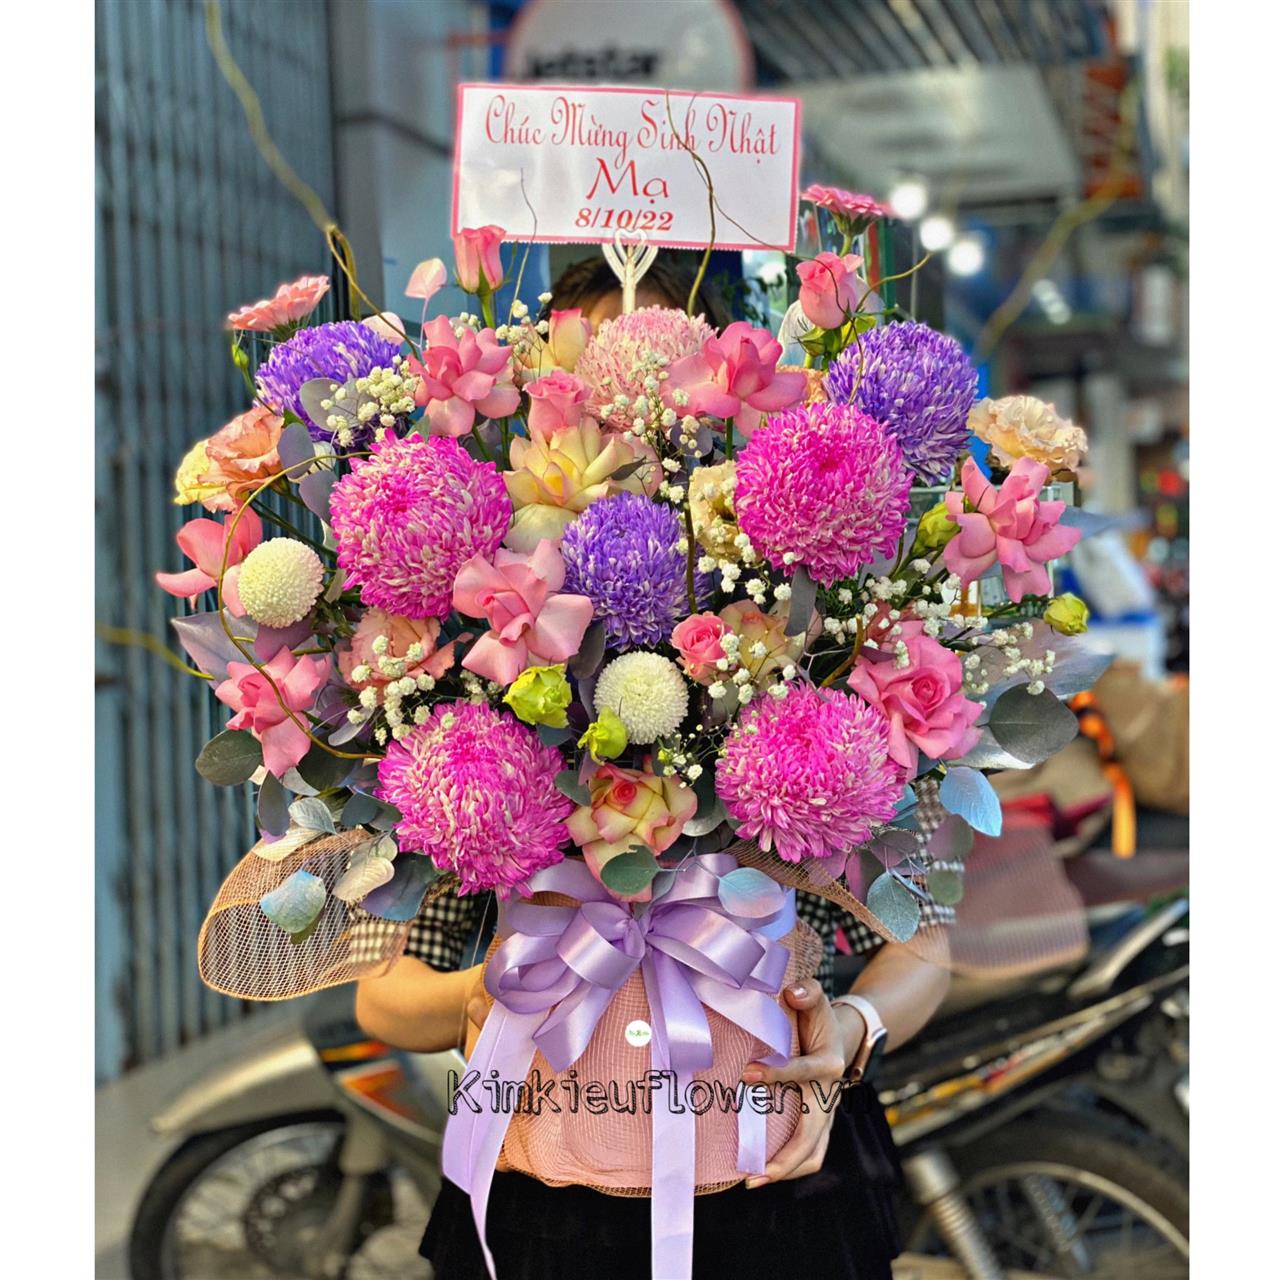 giỏ hoa cúc mẫu đơn tone hồng tím, thích hợp tặng sinh nhật Mẹ